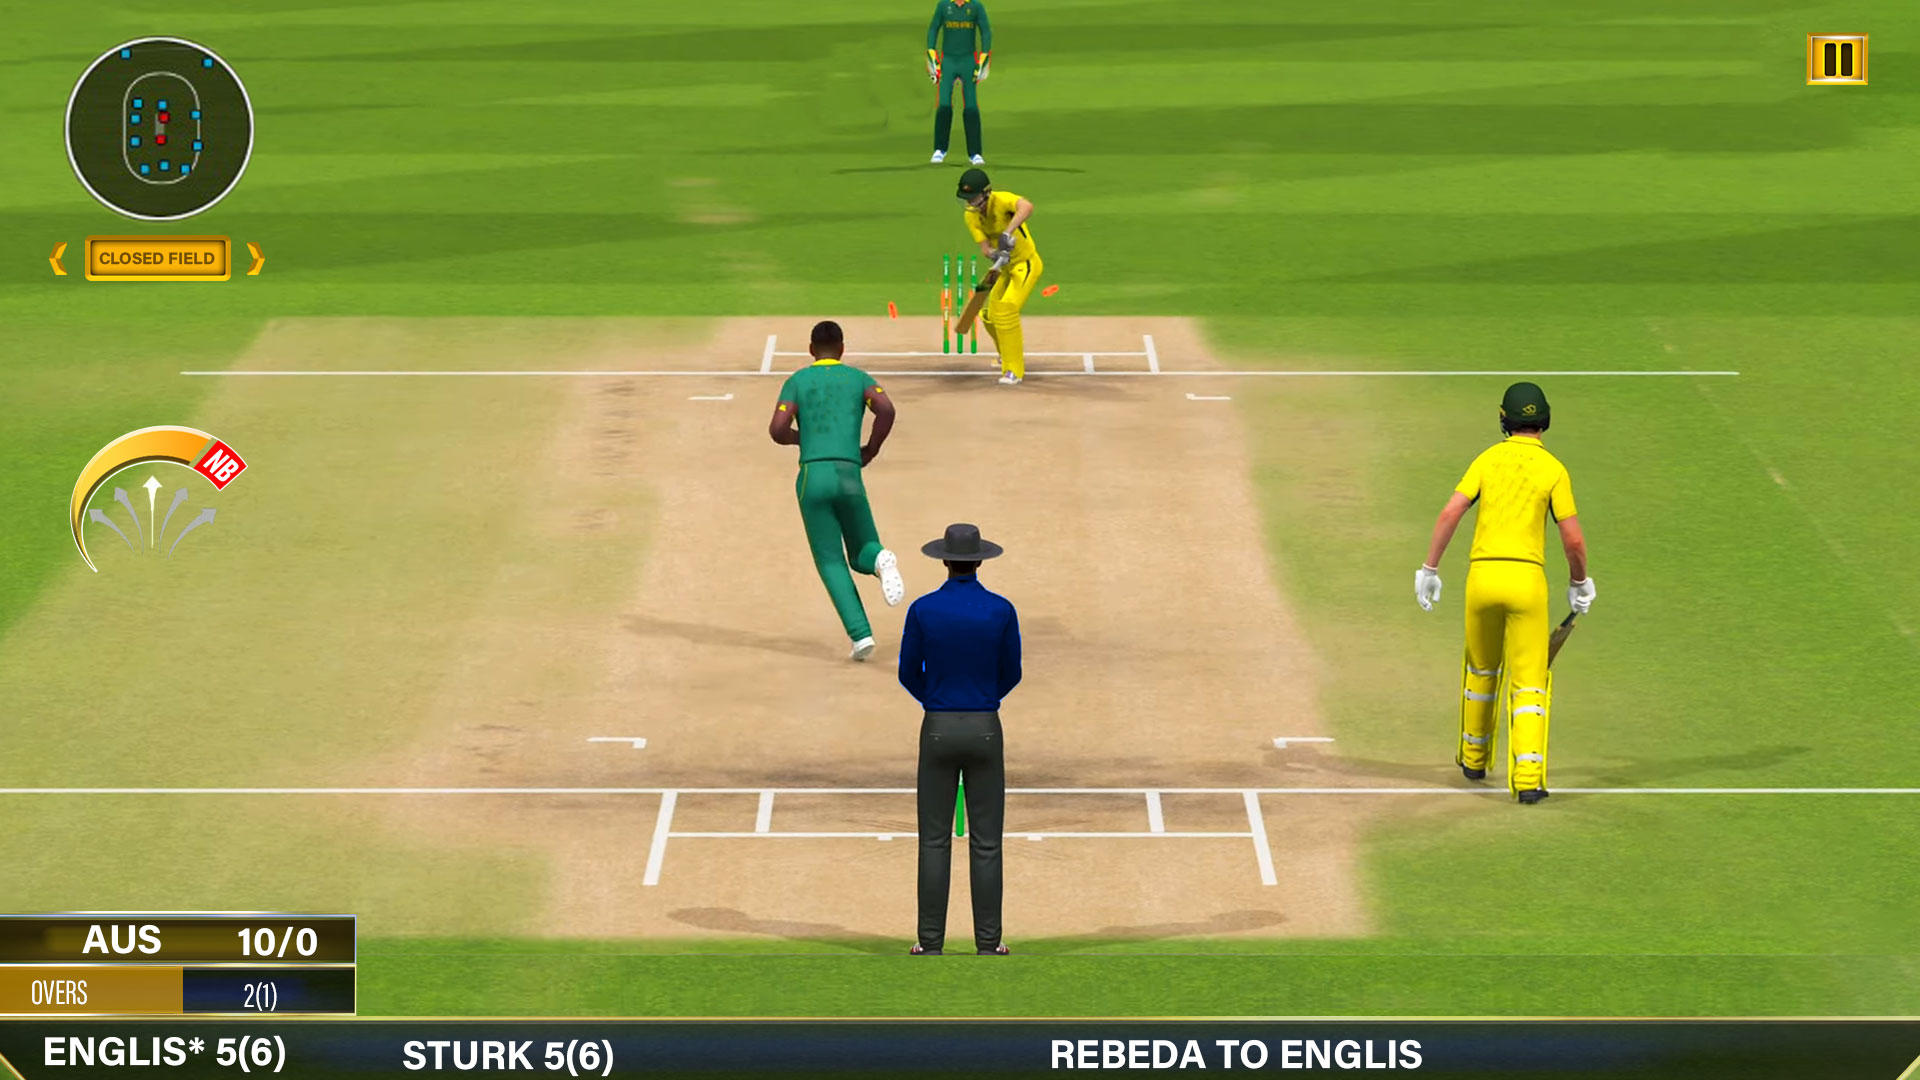 Screenshot 1 of Juegos de críquet reales 2023 2.3